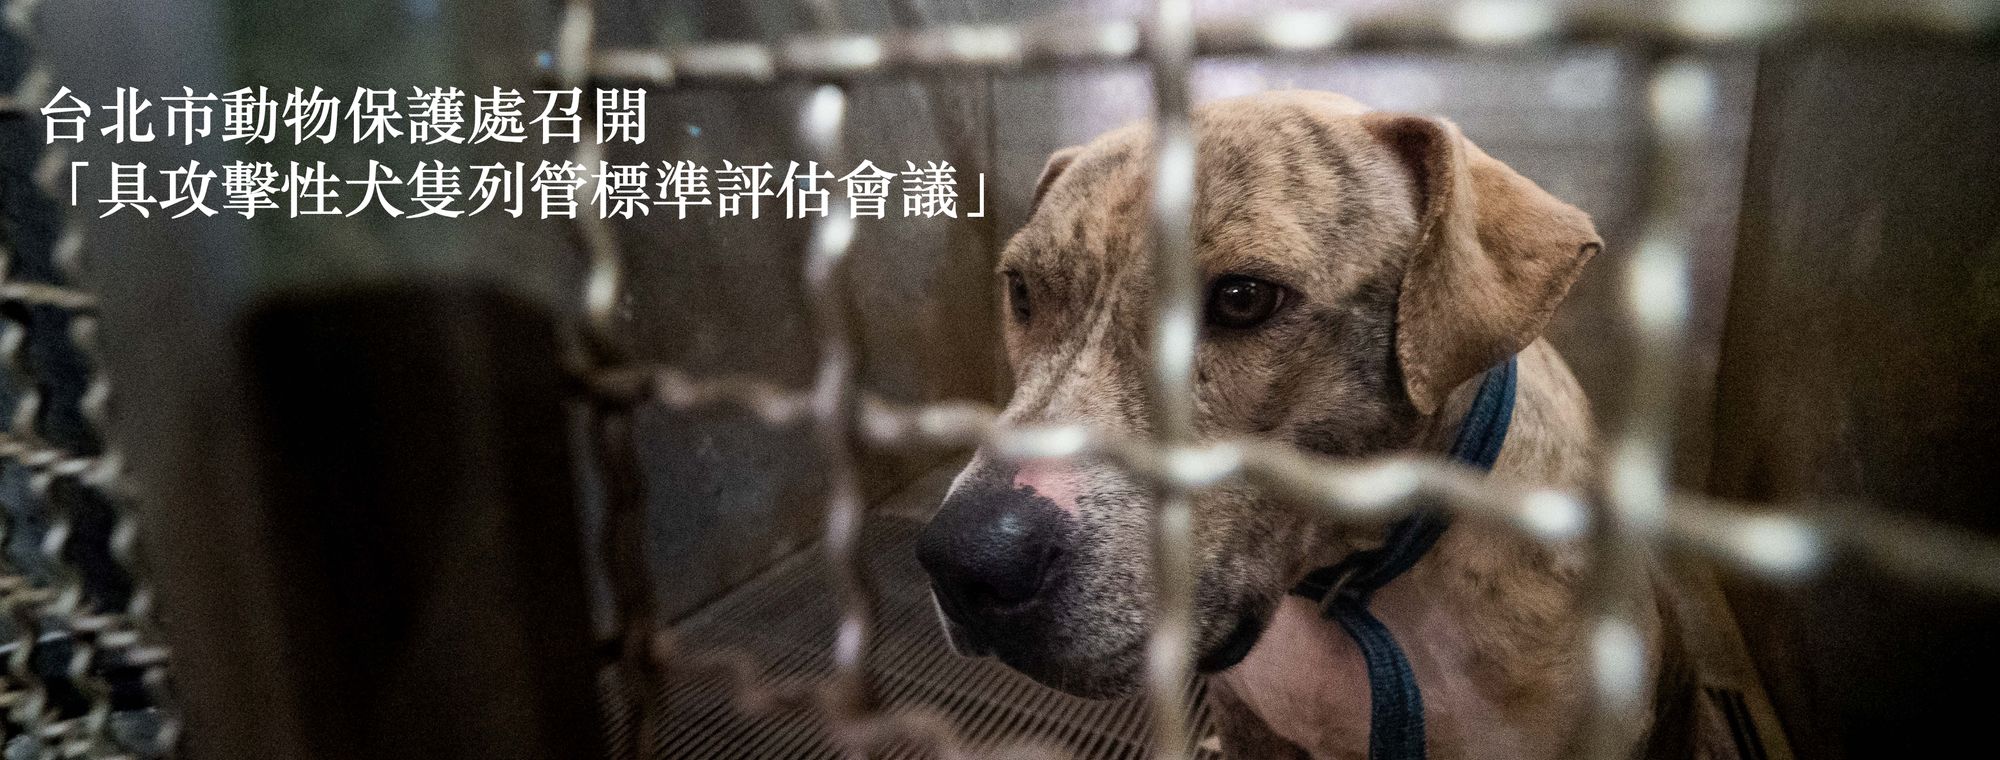 參與由台北市動物保護處召開的「具攻擊性犬隻列管標準評估會議」